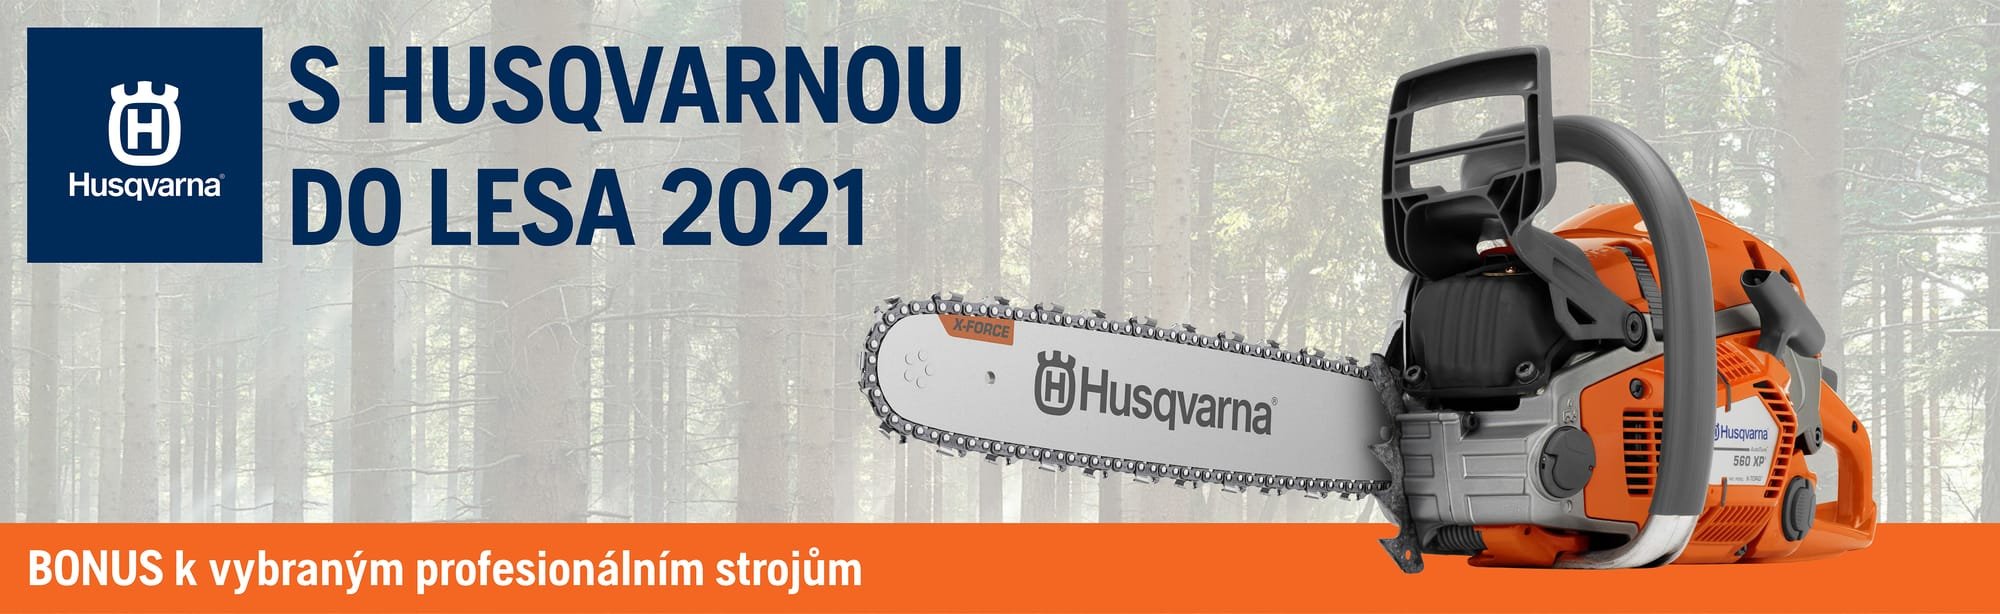 S Husqvarnou do lesa - jaro 24.3.2021 - 28.4.2021